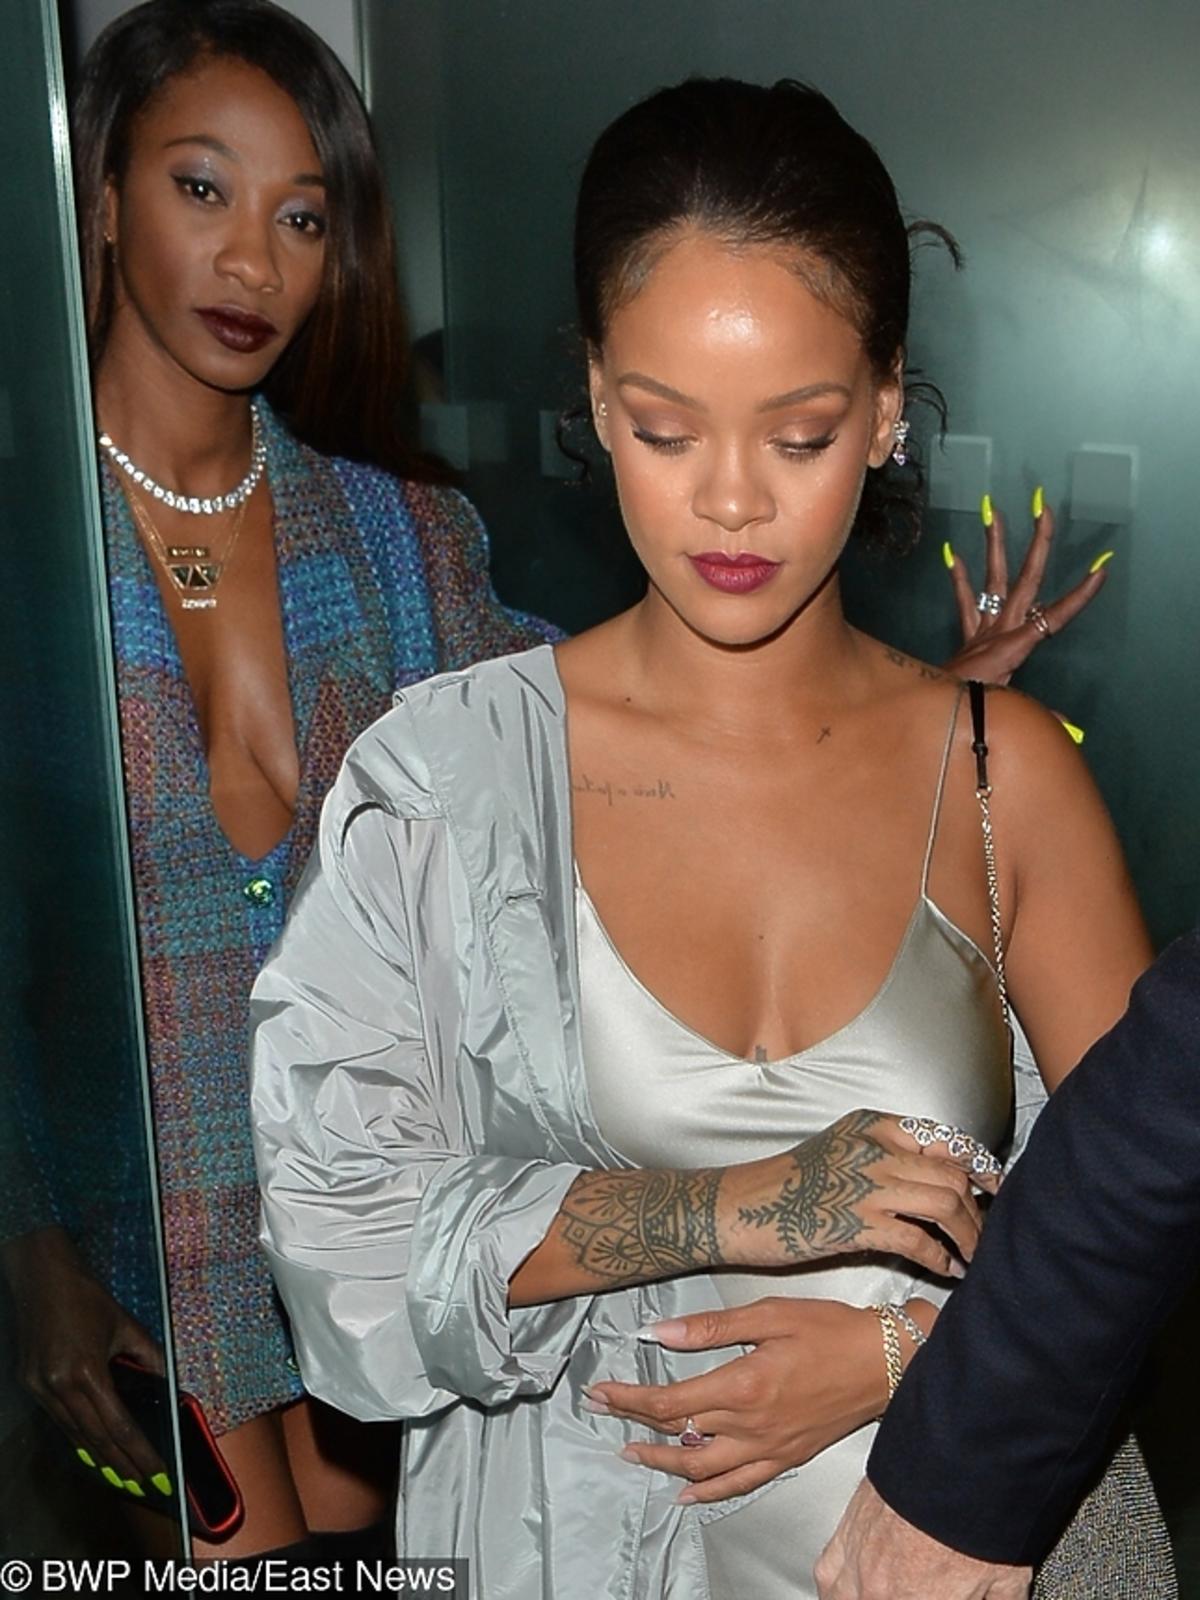 Rihanna w srebrnej sukience. Widać, że ukryła dodatkowe kilogramy?